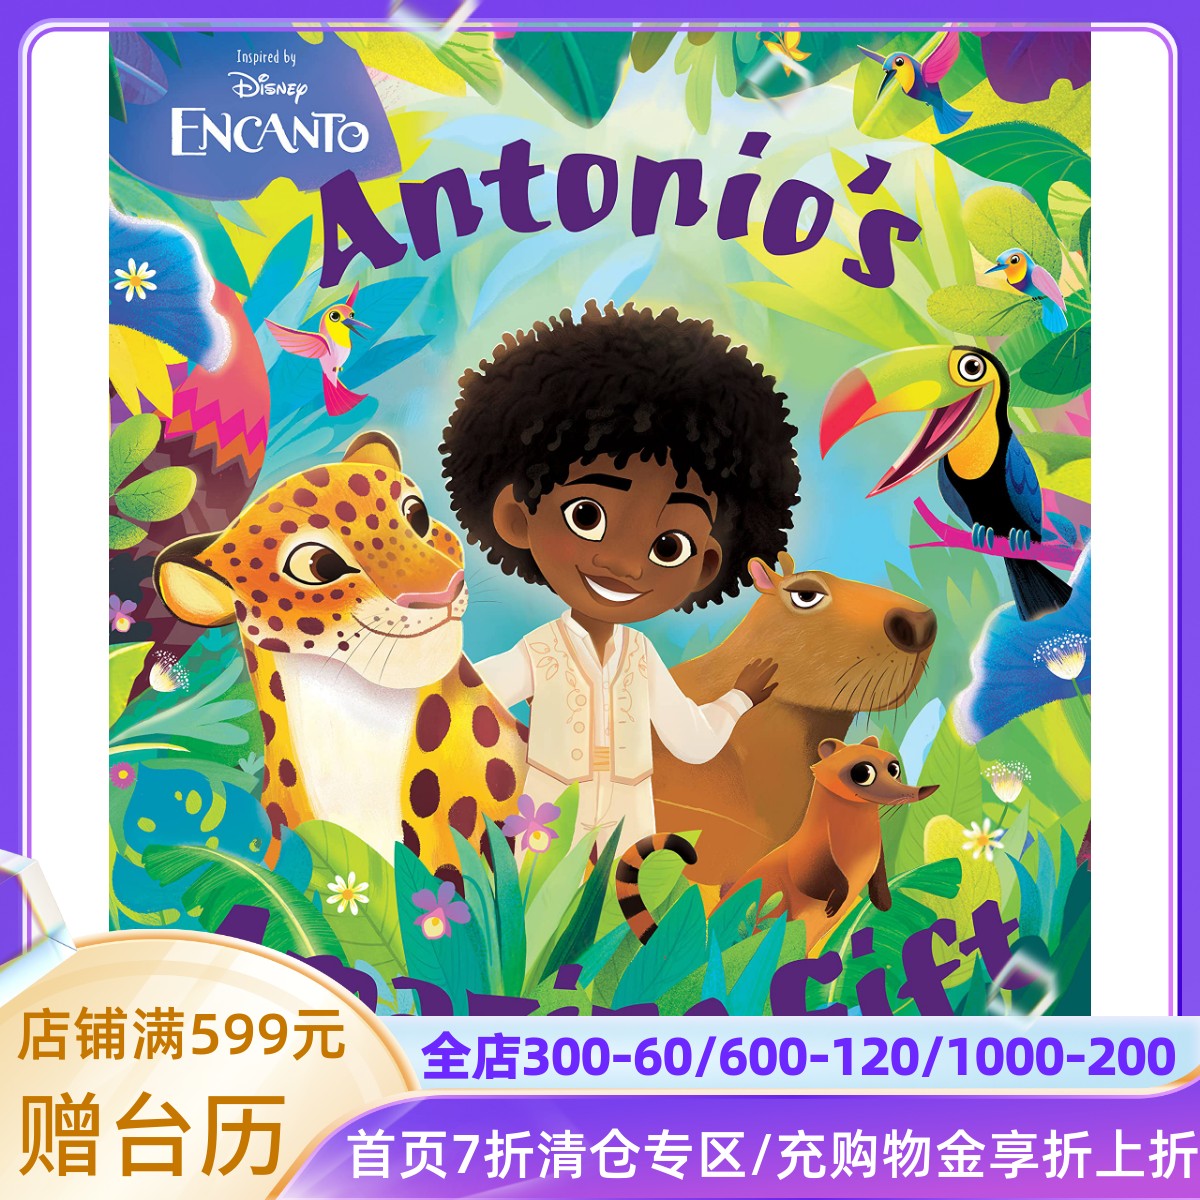 迪士尼 魔法满屋 电影绘本故事书 安东尼奥的神奇礼物 精装 英文原版 Disney Encanto Antonio's Amazing Gift